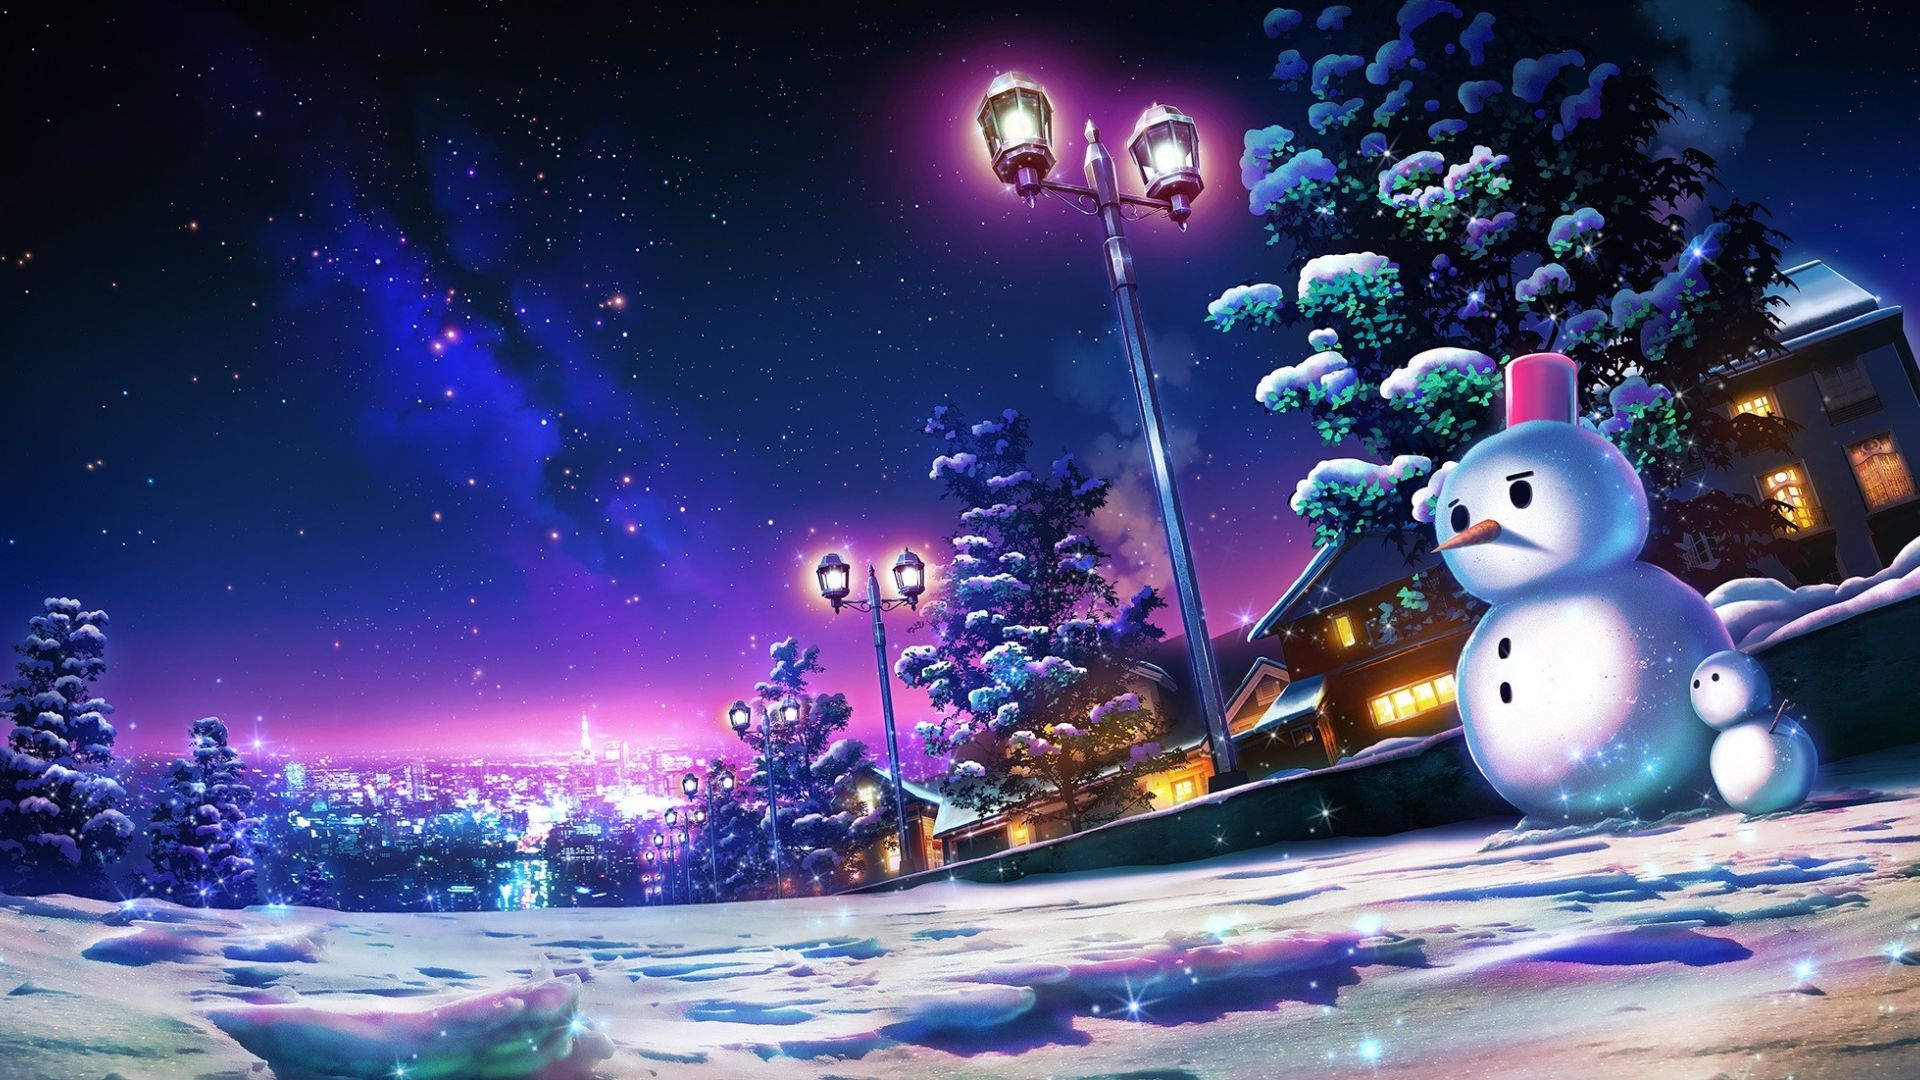 Wallpaper Snowman, winter, lamp, night, art